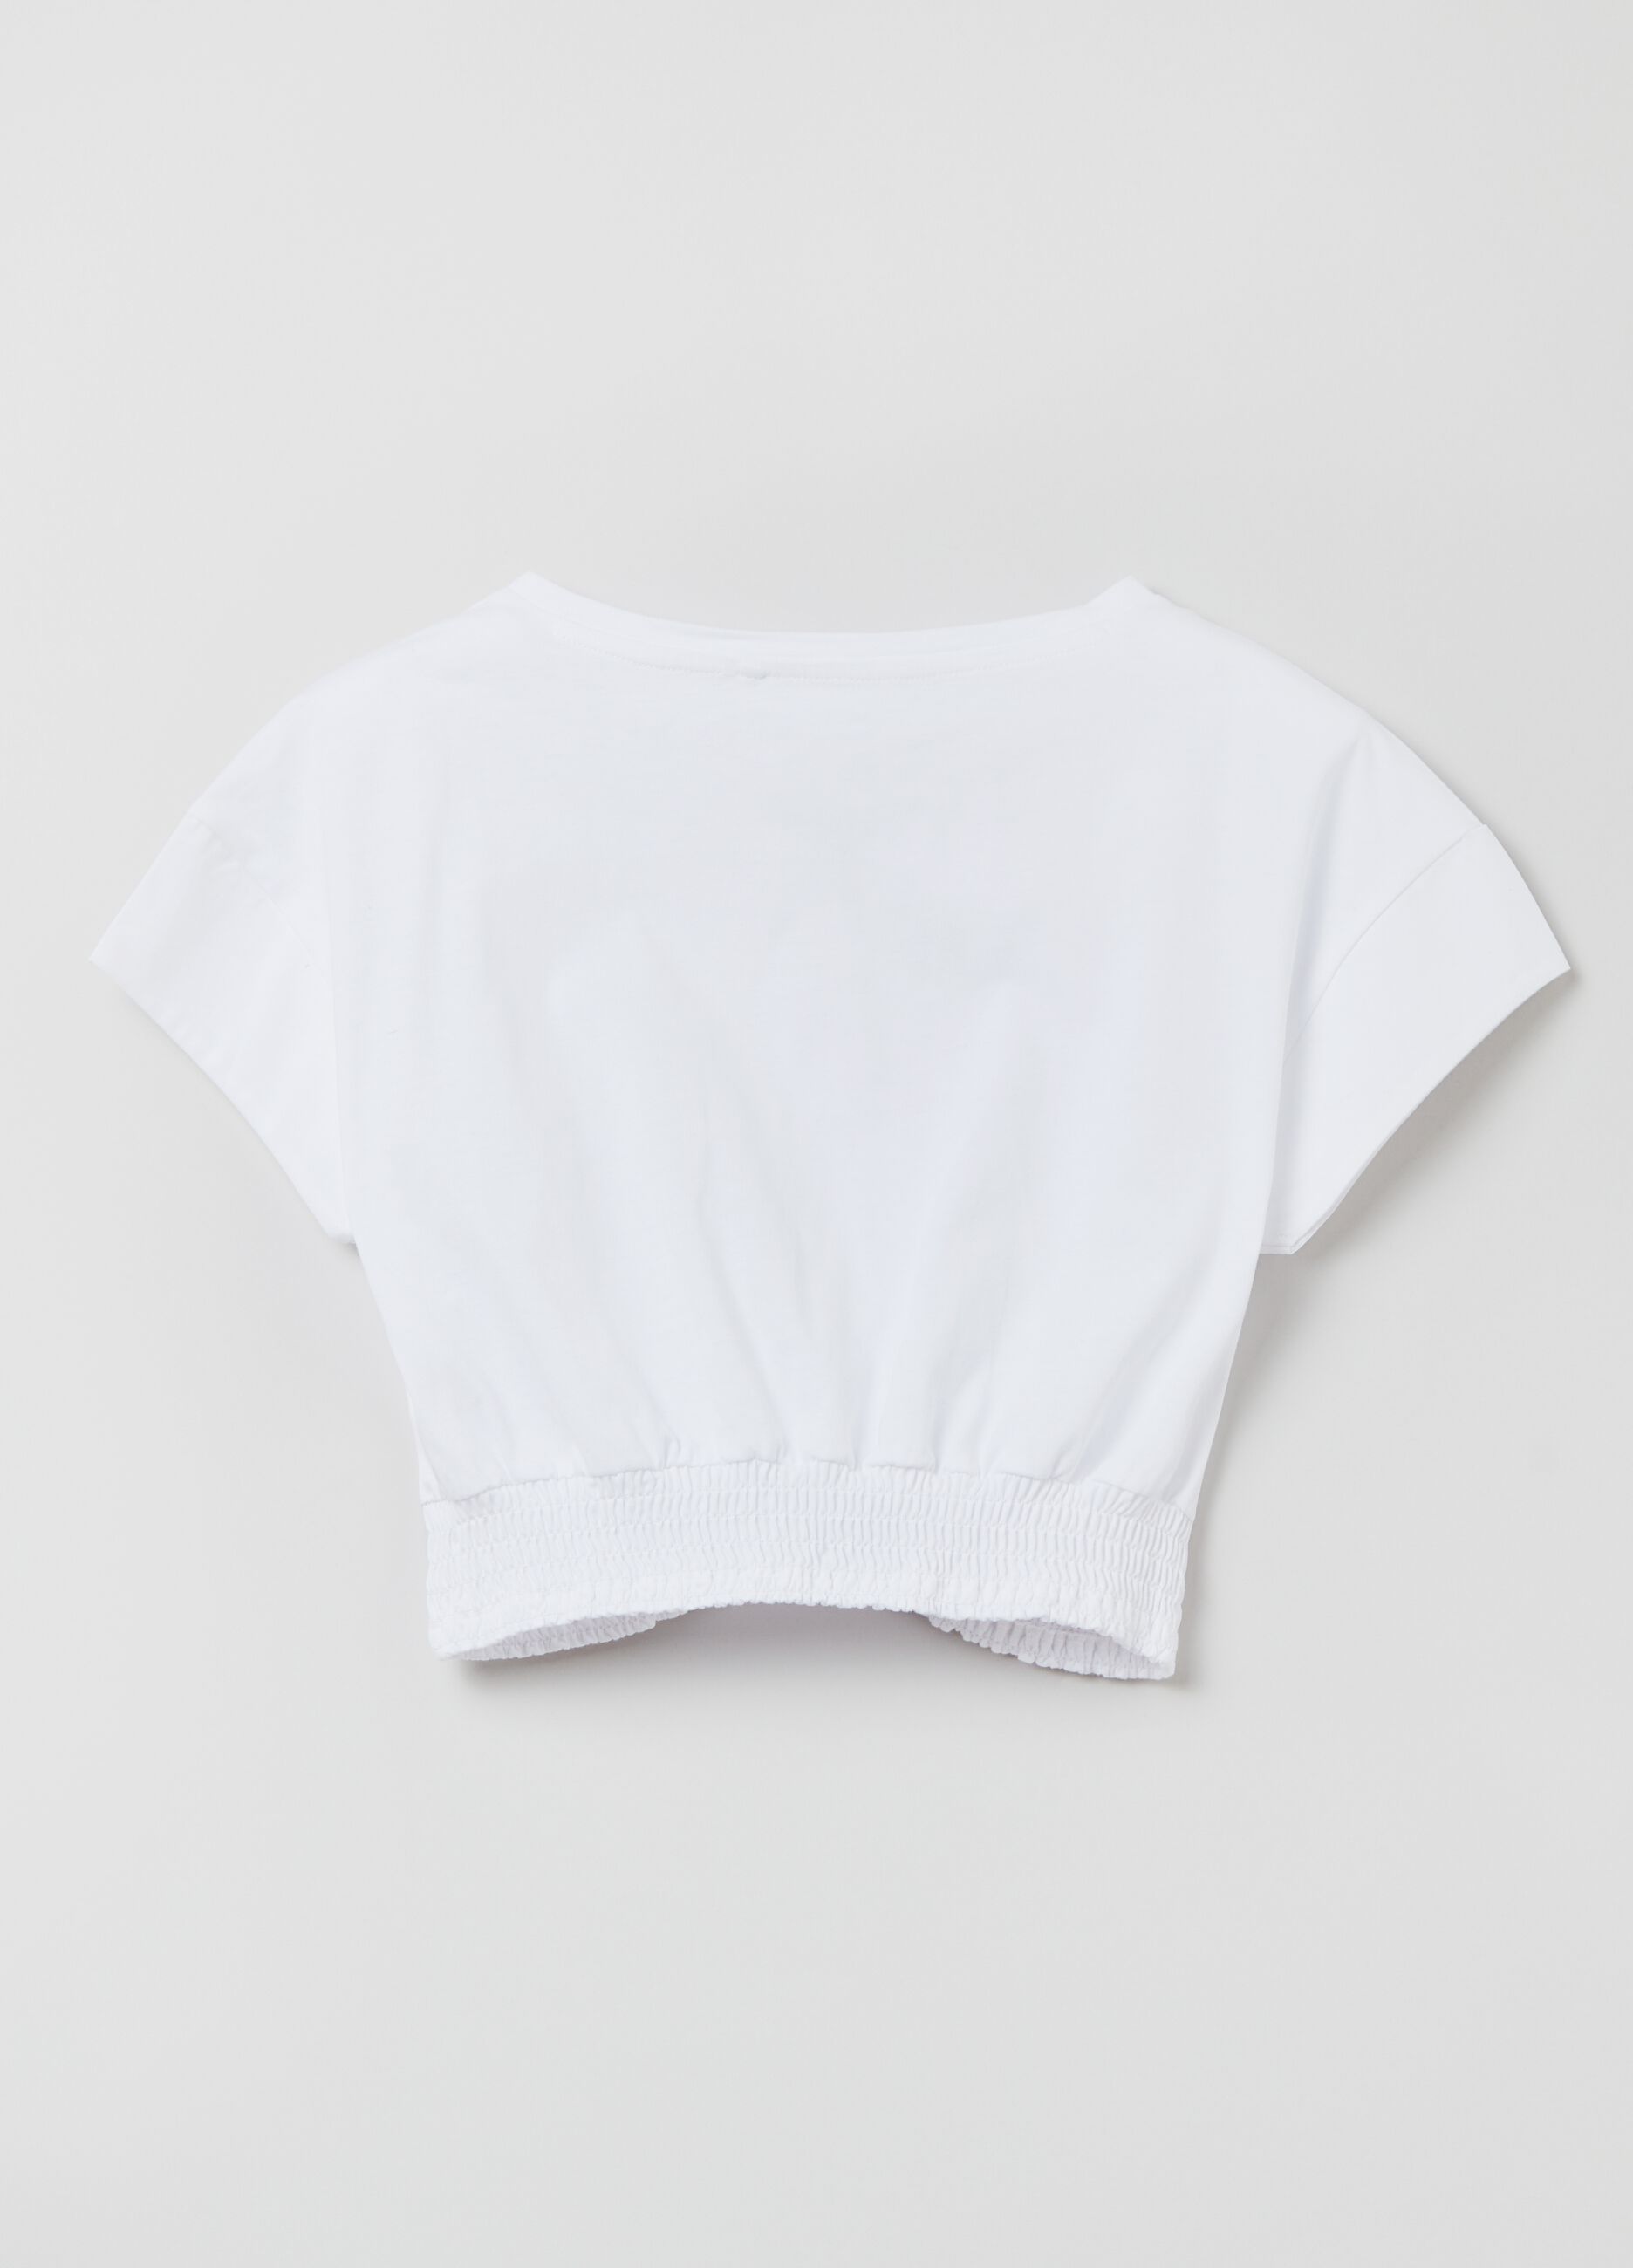 Crop T-shirt in cotton